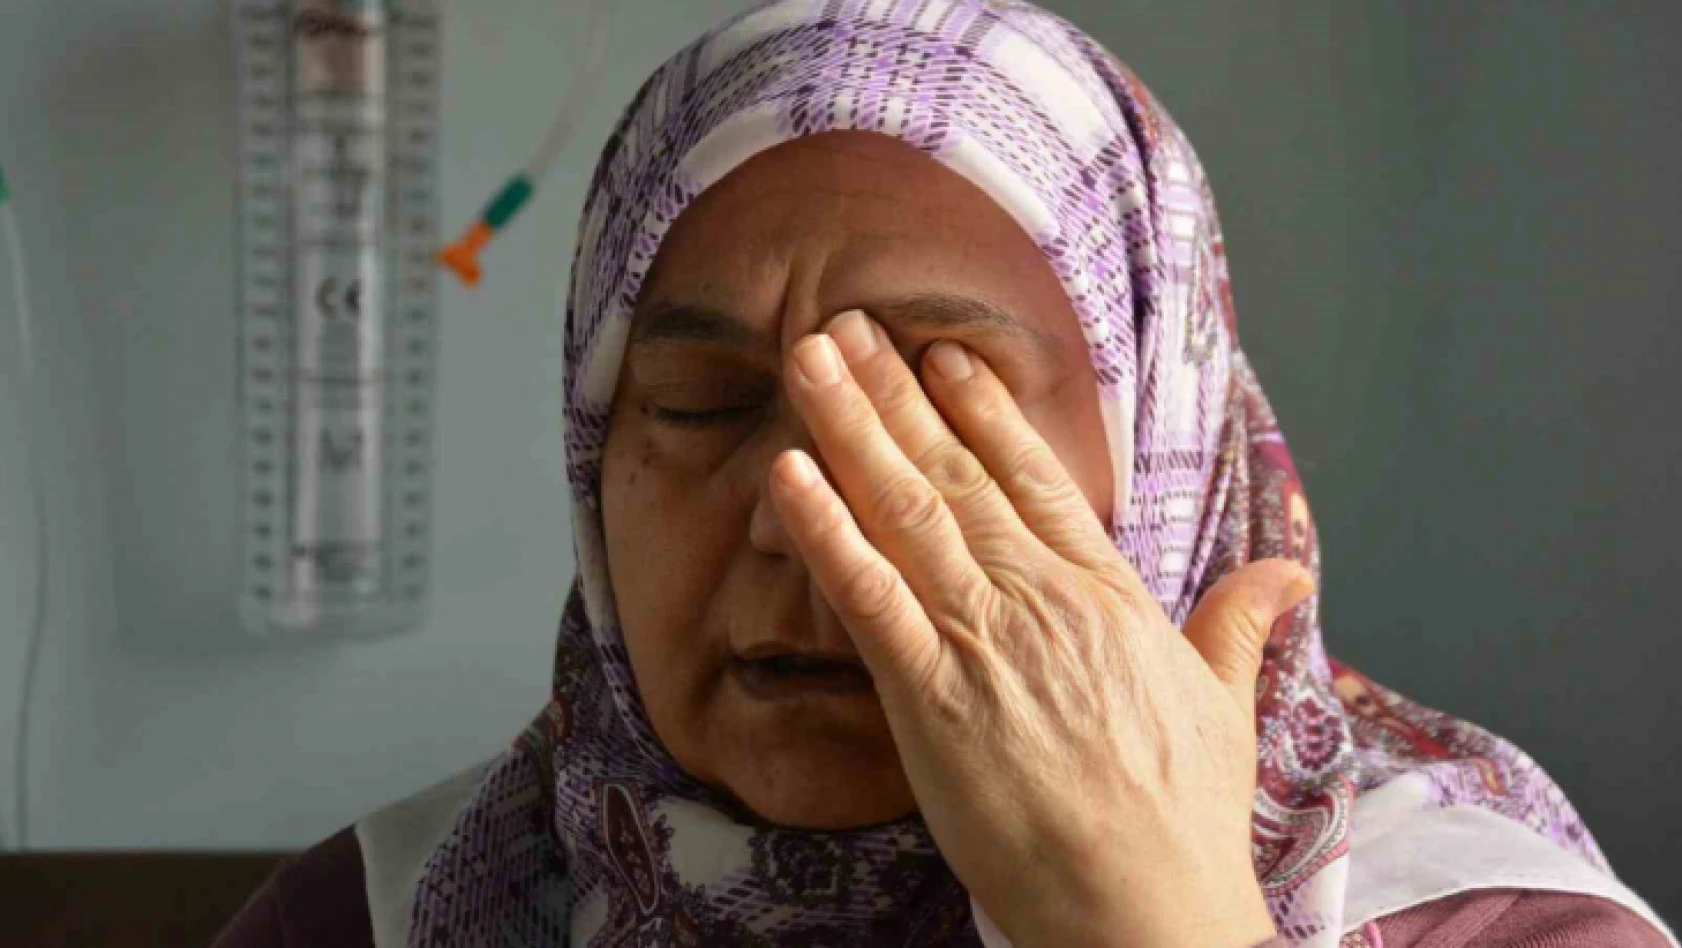 Depremzedenin gözyaşları yürekleri dağladı: 'Annemin toprağa gömüldüğünü bile göremedim'